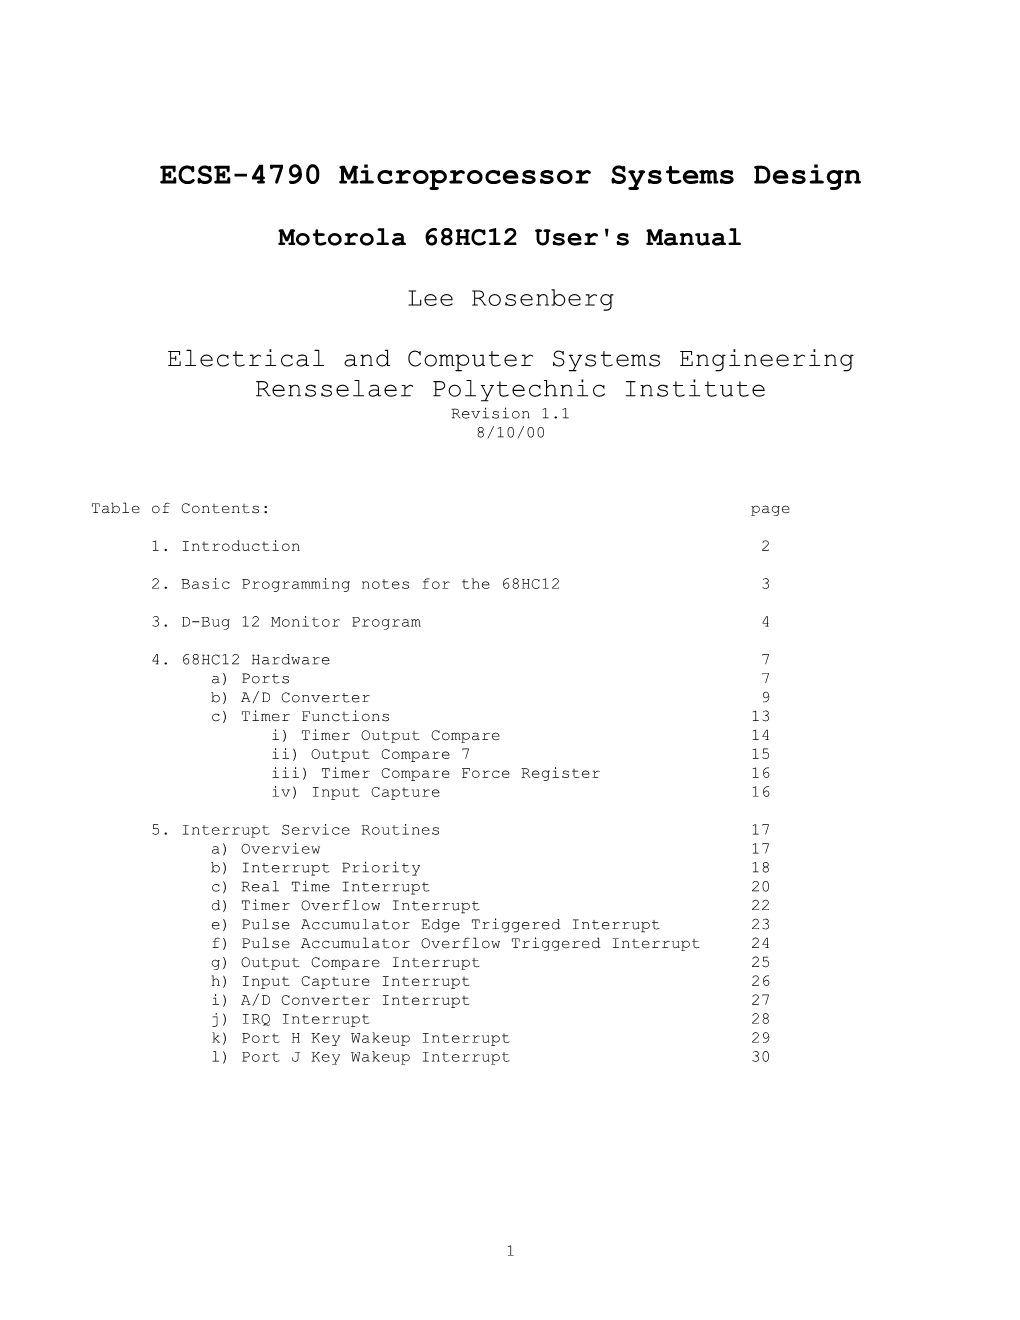 Motorola 68HC12 User's Manual